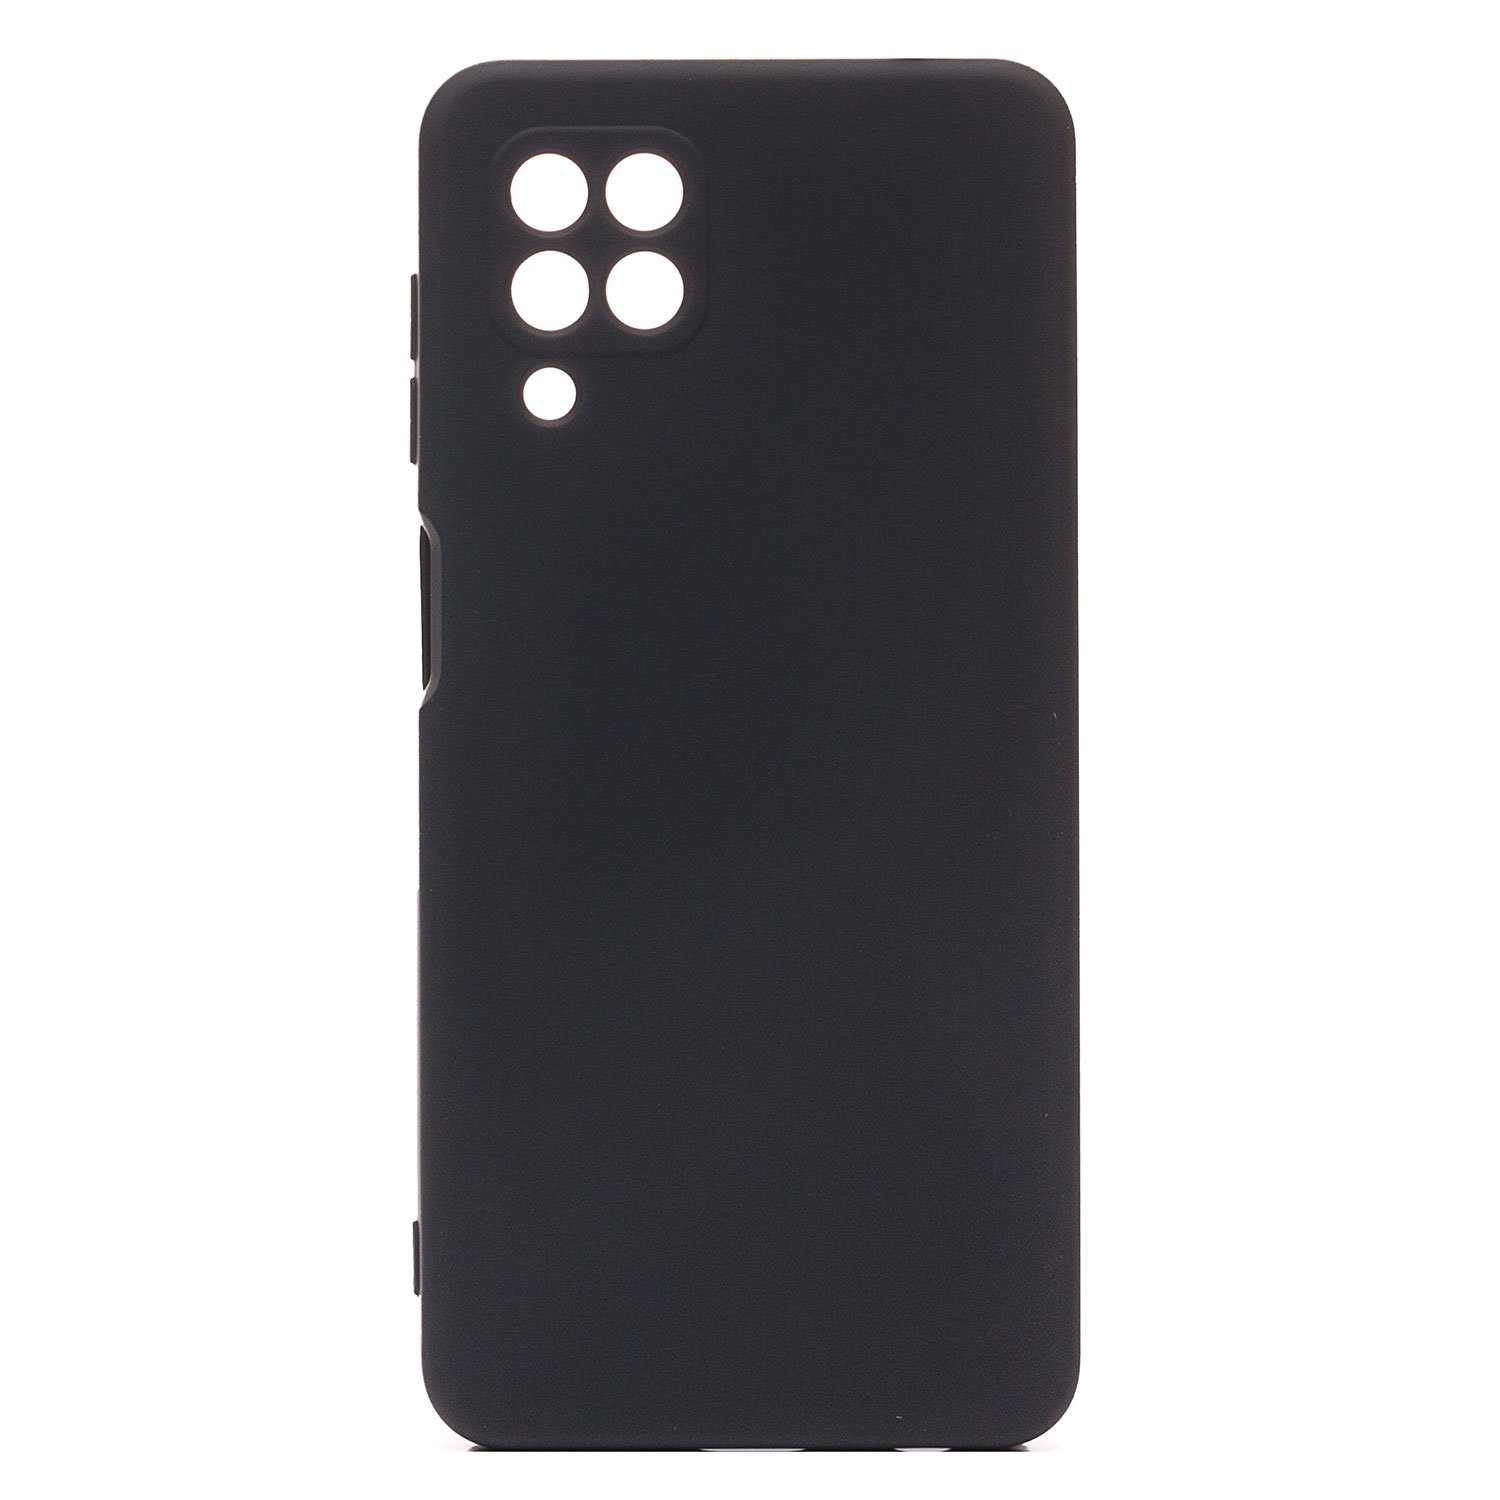 Чехол-накладка Activ Full Original Design для смартфона Samsung SM-M325 Galaxy M32 Global, пластик, черный (133503)